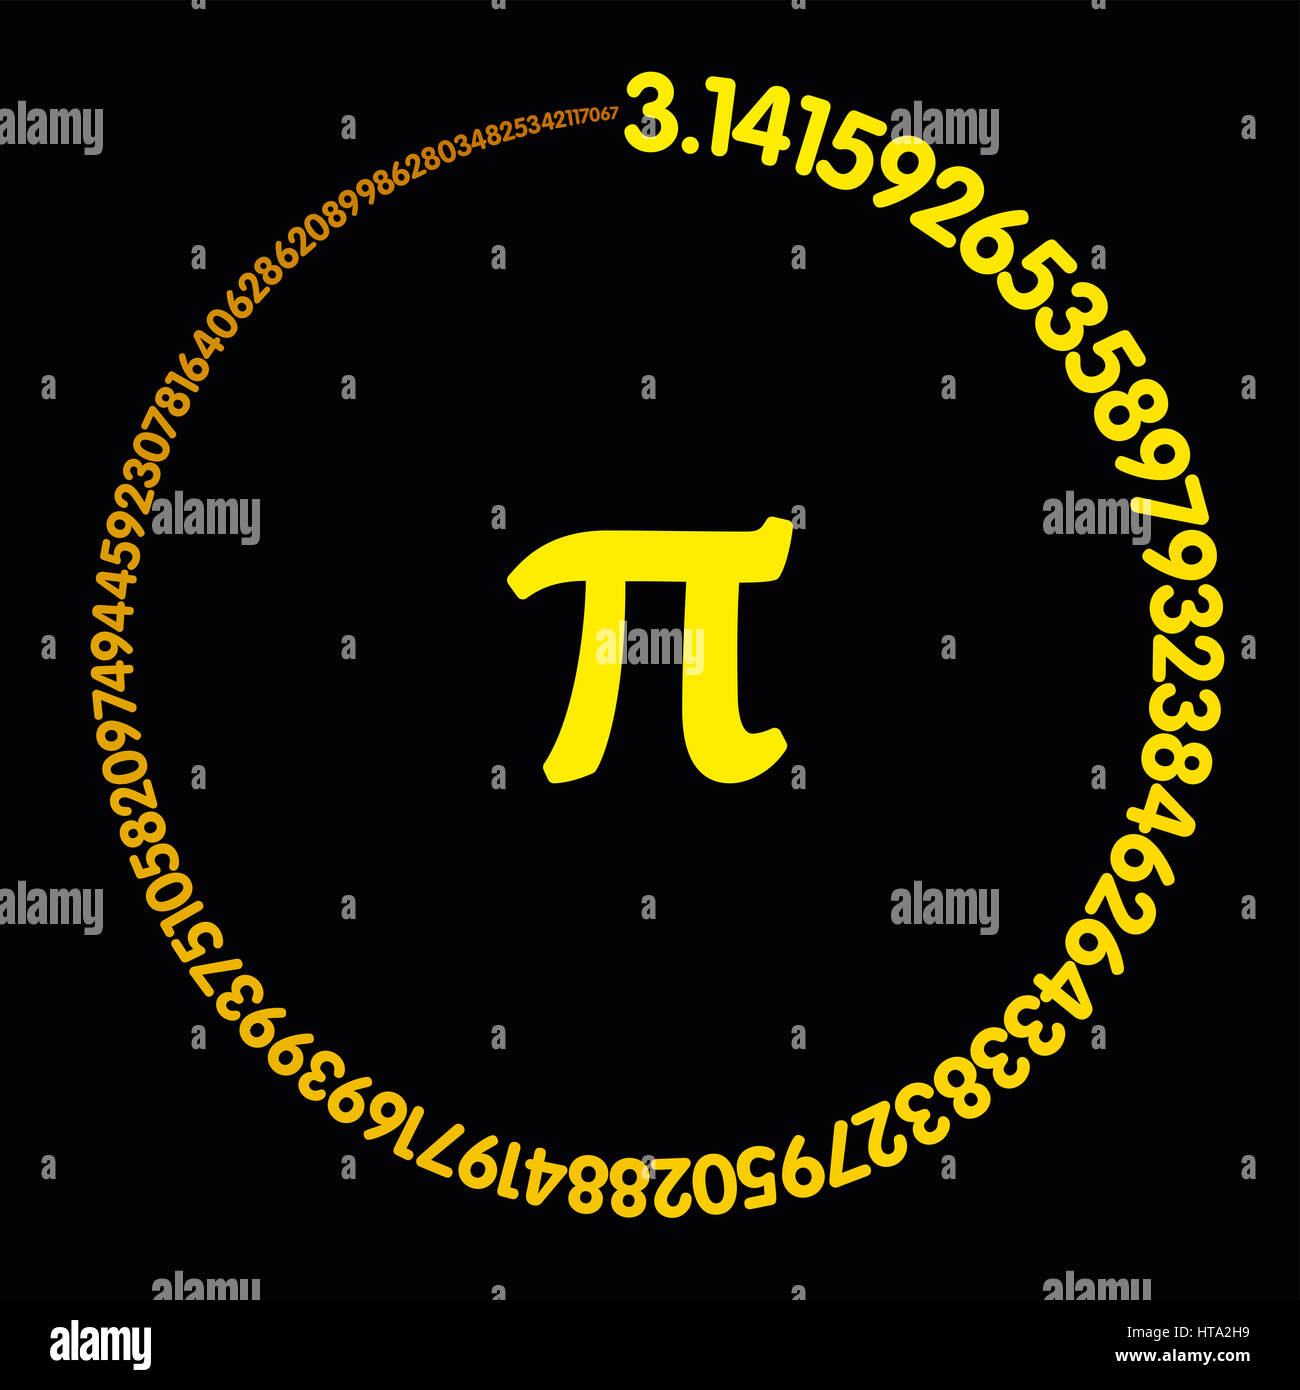 Goldene Zahl Pi. Hundert Ziffern der konstante einen gelb-farbigen Kreis bilden. Wert der unendliche Zahl Pi auf 99 Dezimalstellen genau Stockfoto